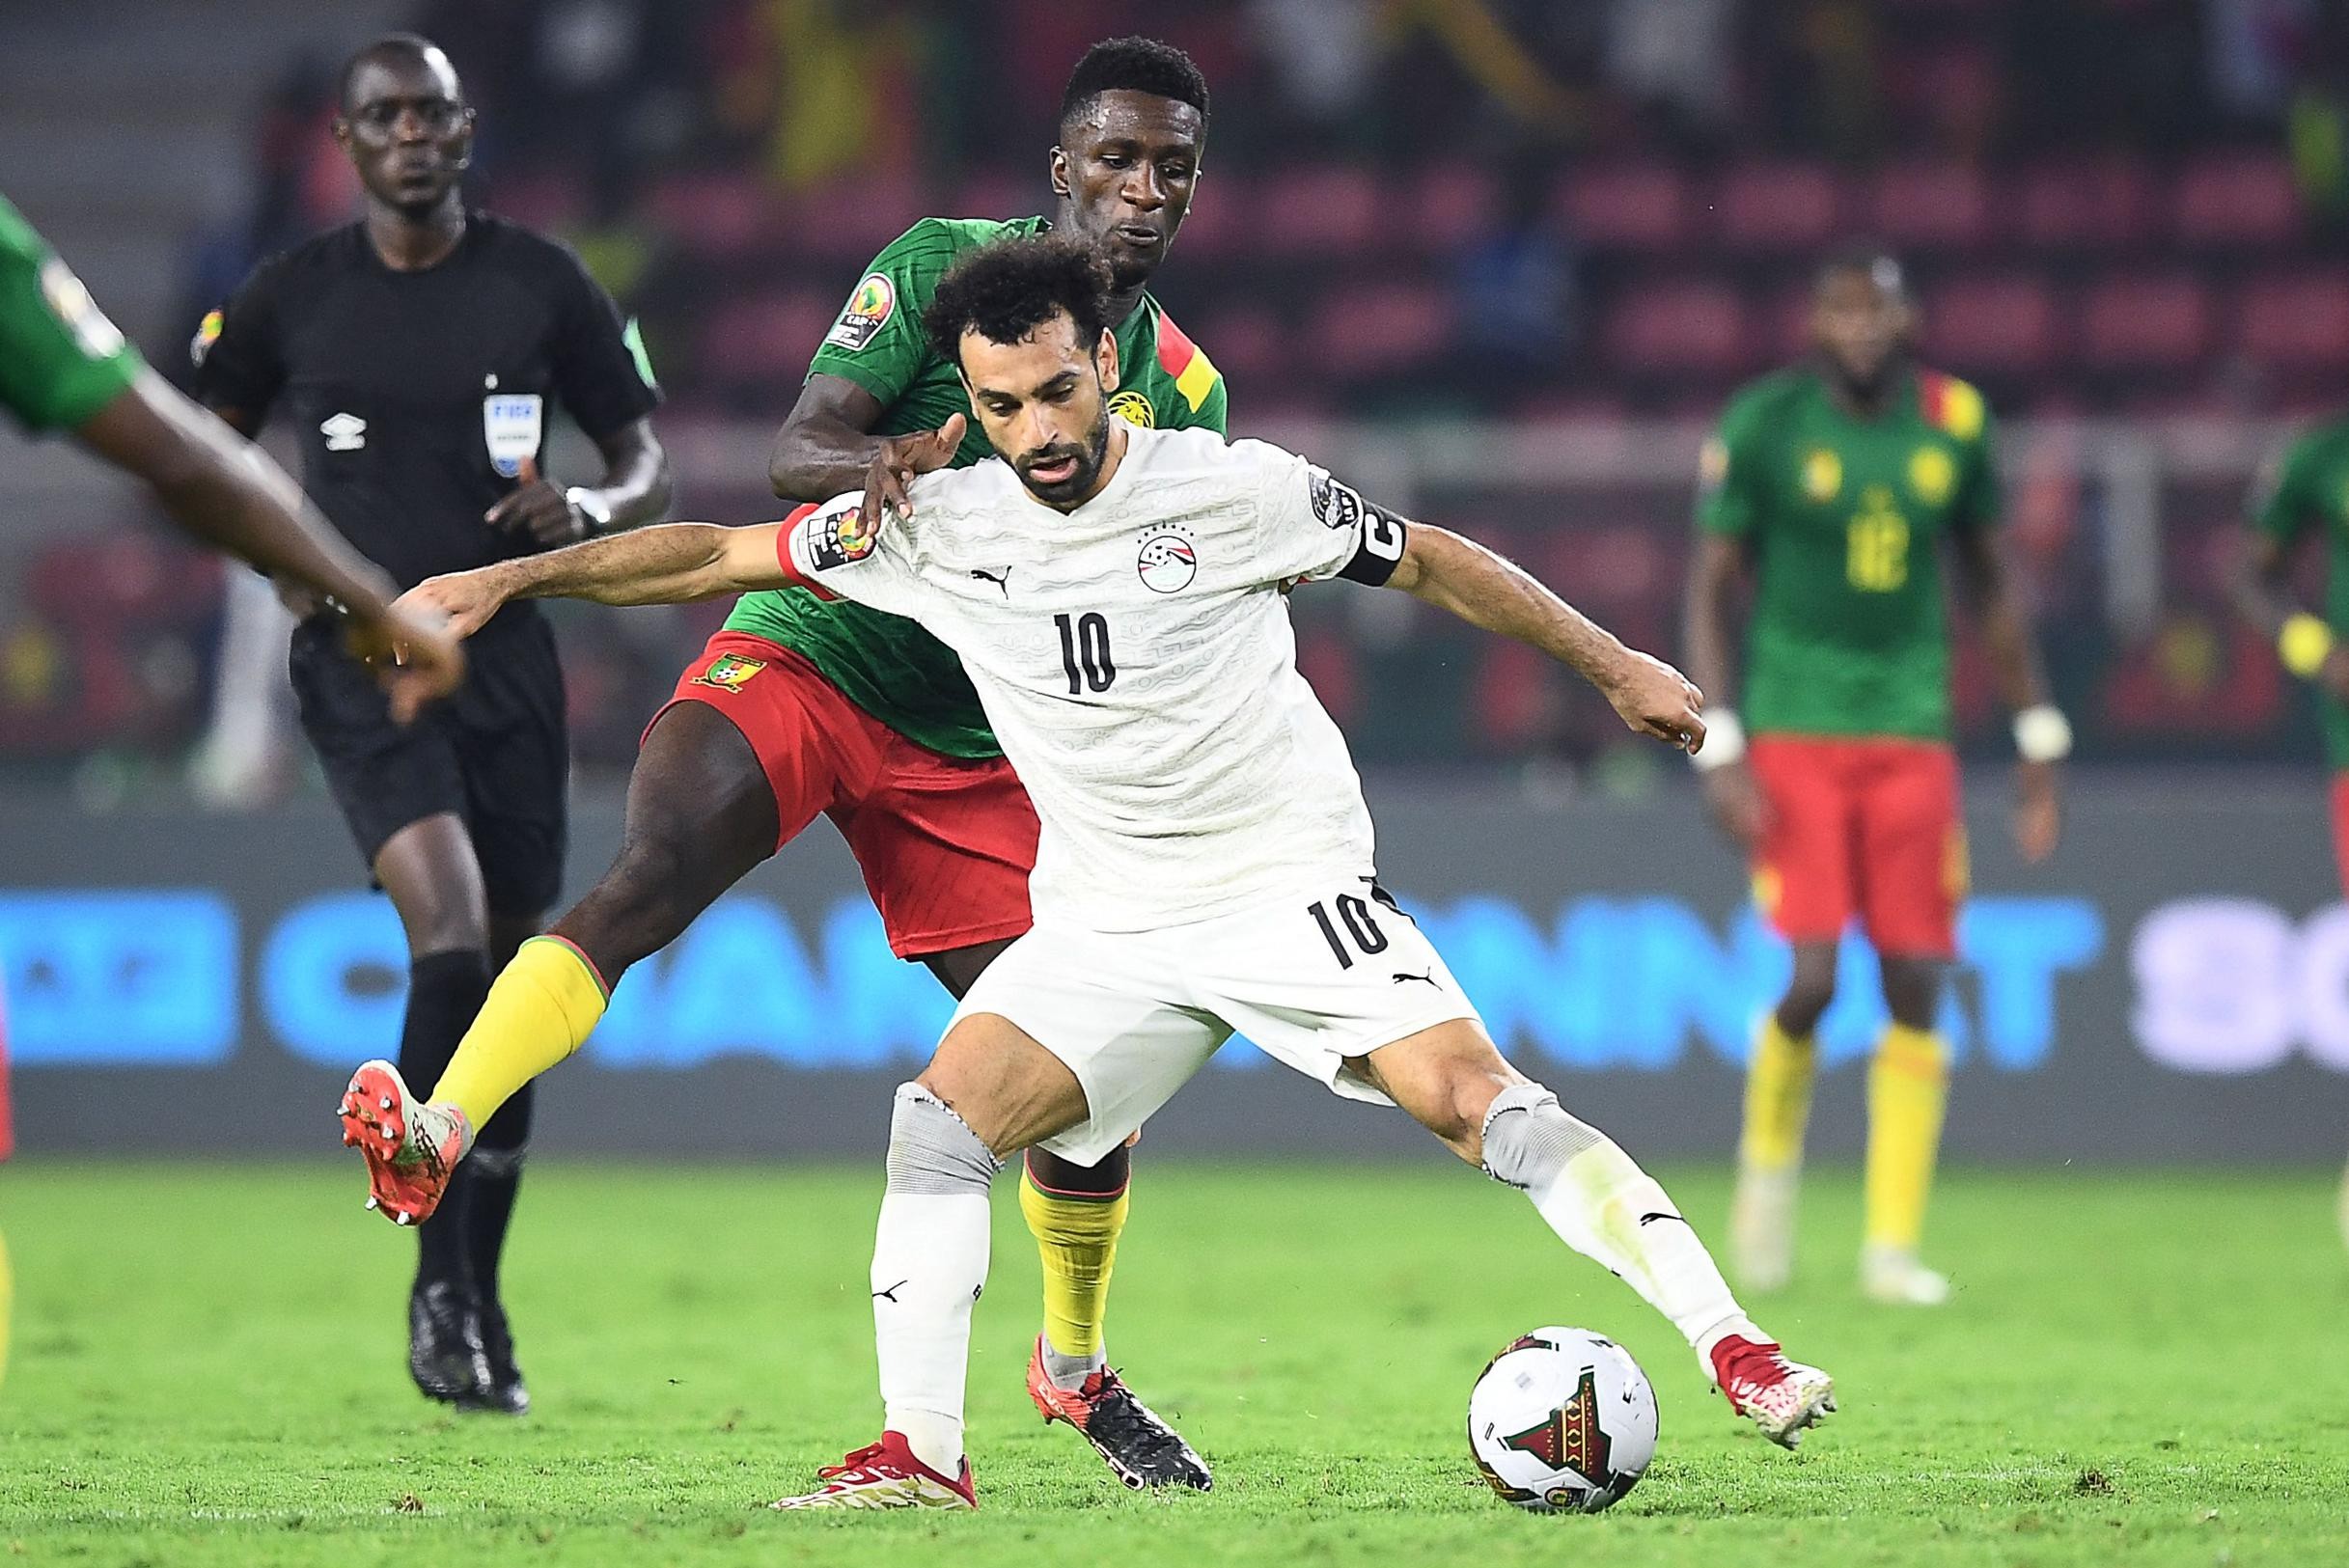 Egypte naar Africa Cup-finale na bloedstollende wedstrijd tegen het